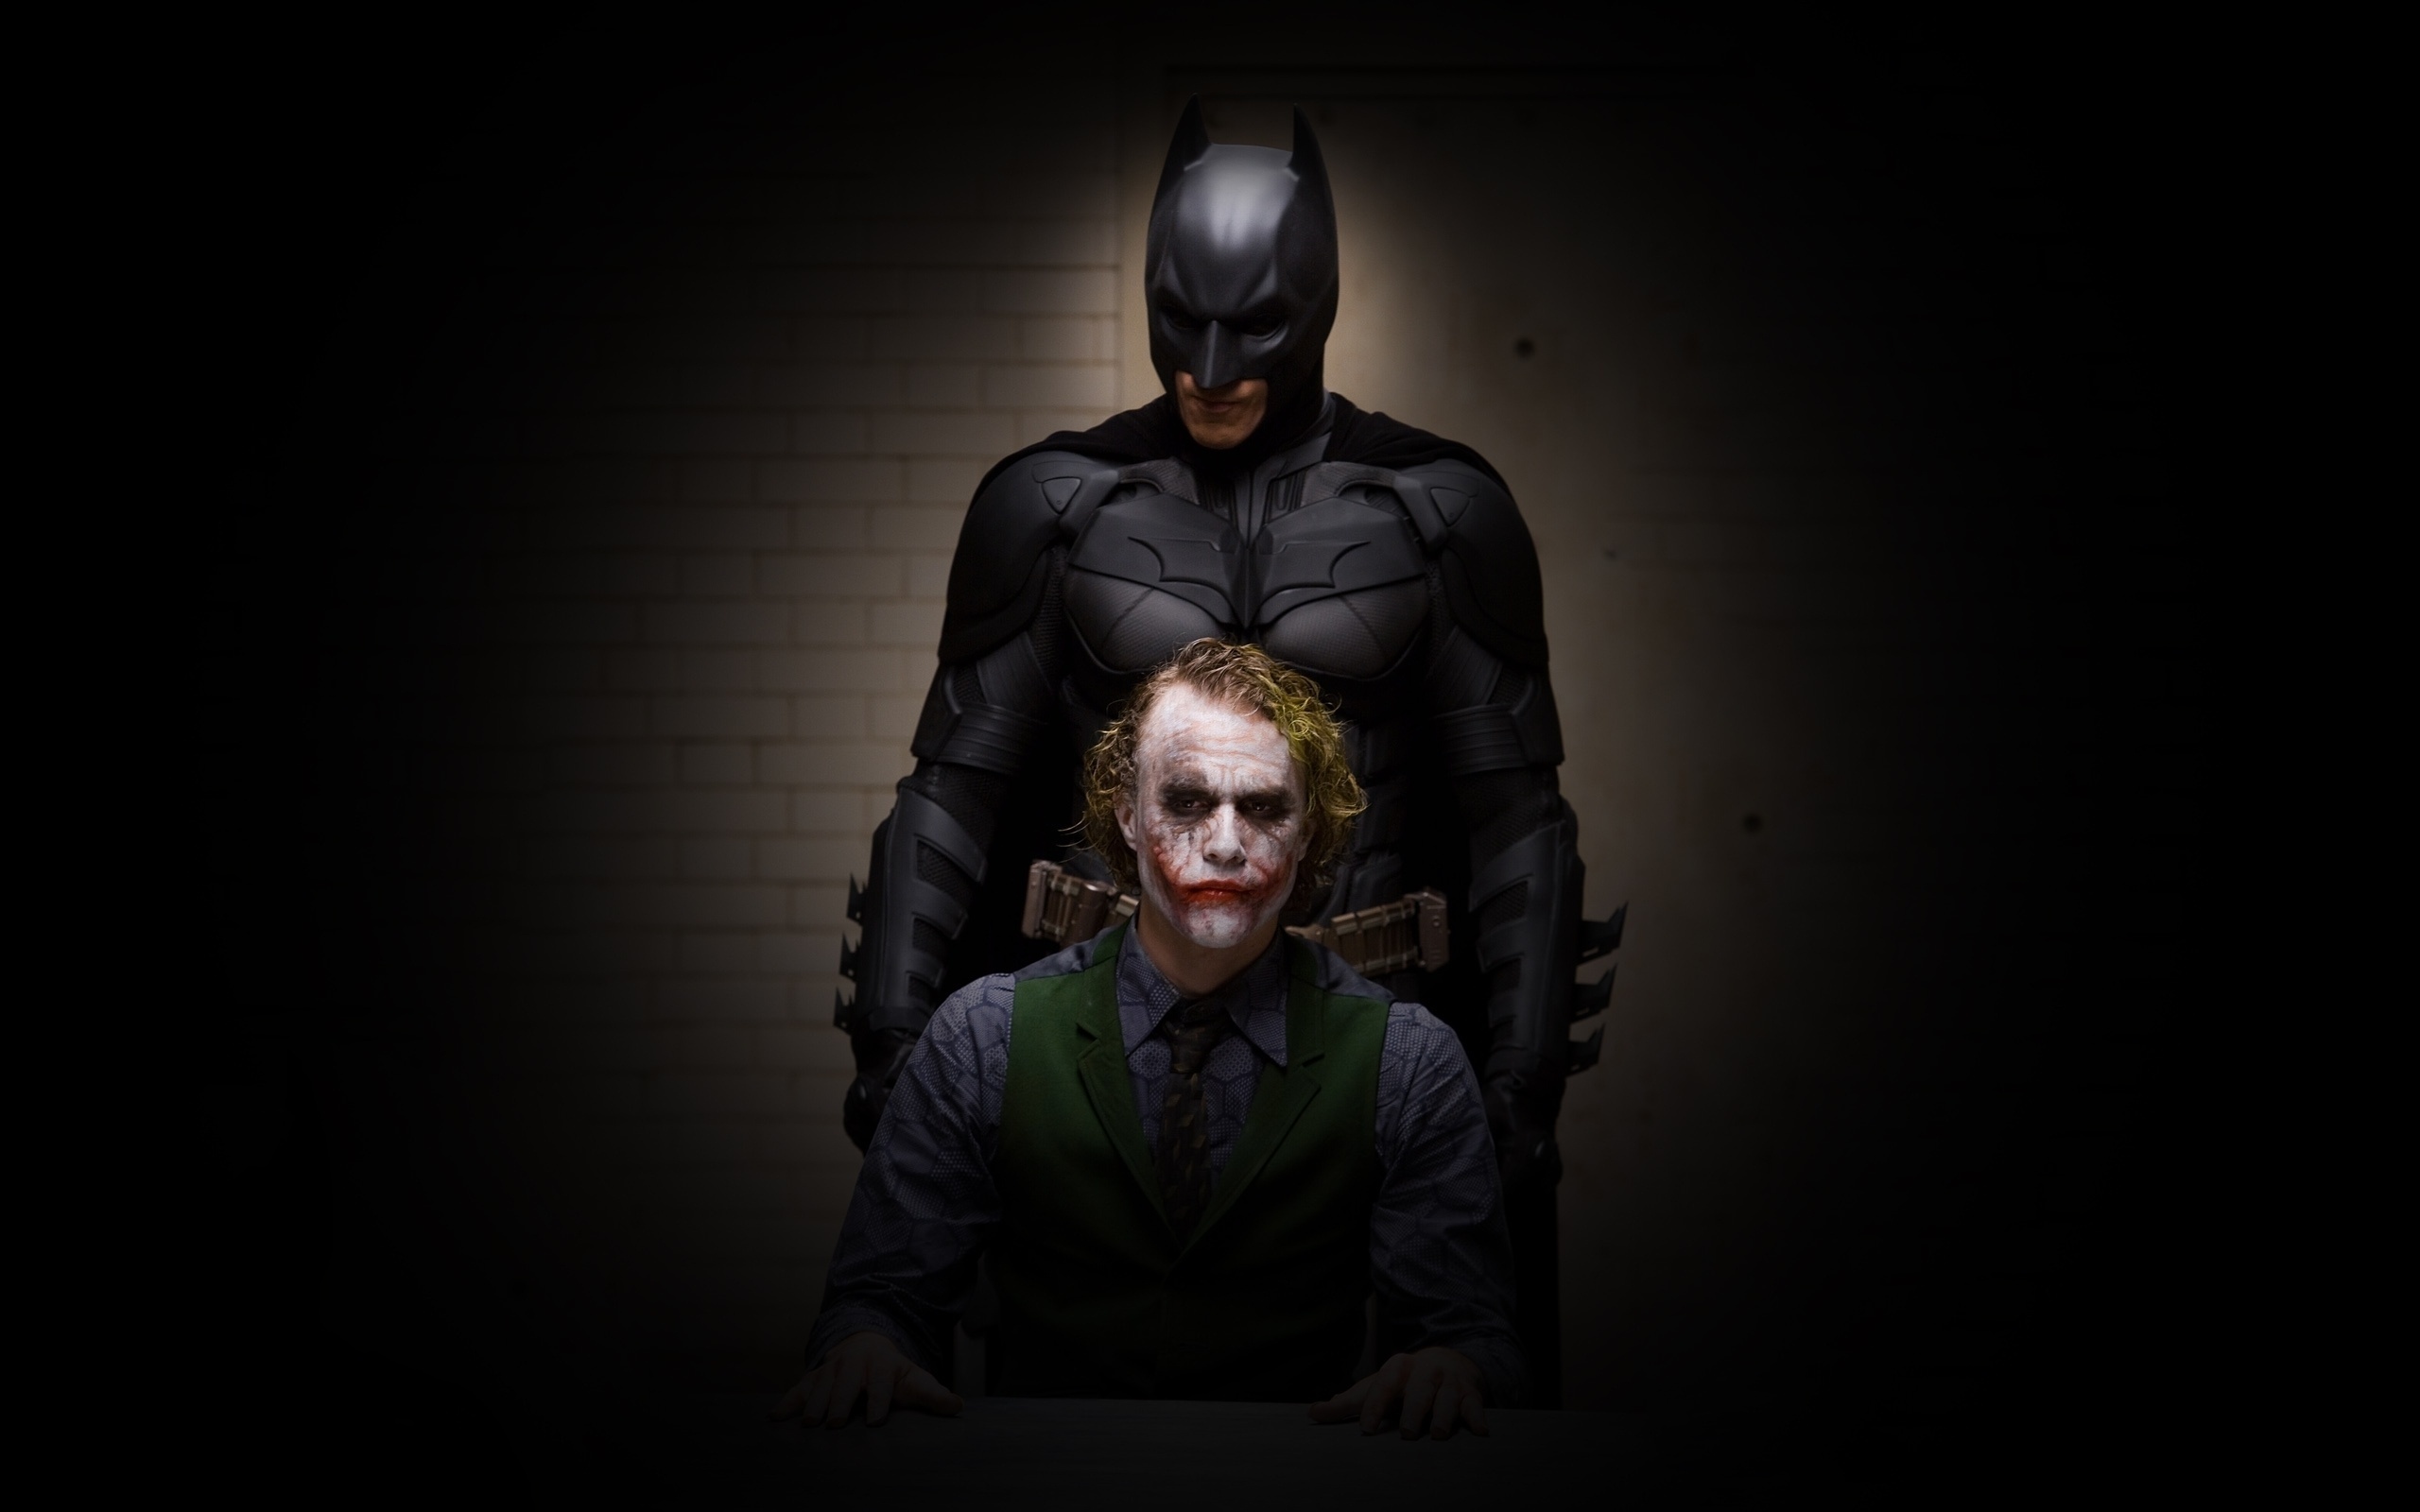 Wallpaper Batman Joker Dark The Dark Knight Free Images at Clkercom